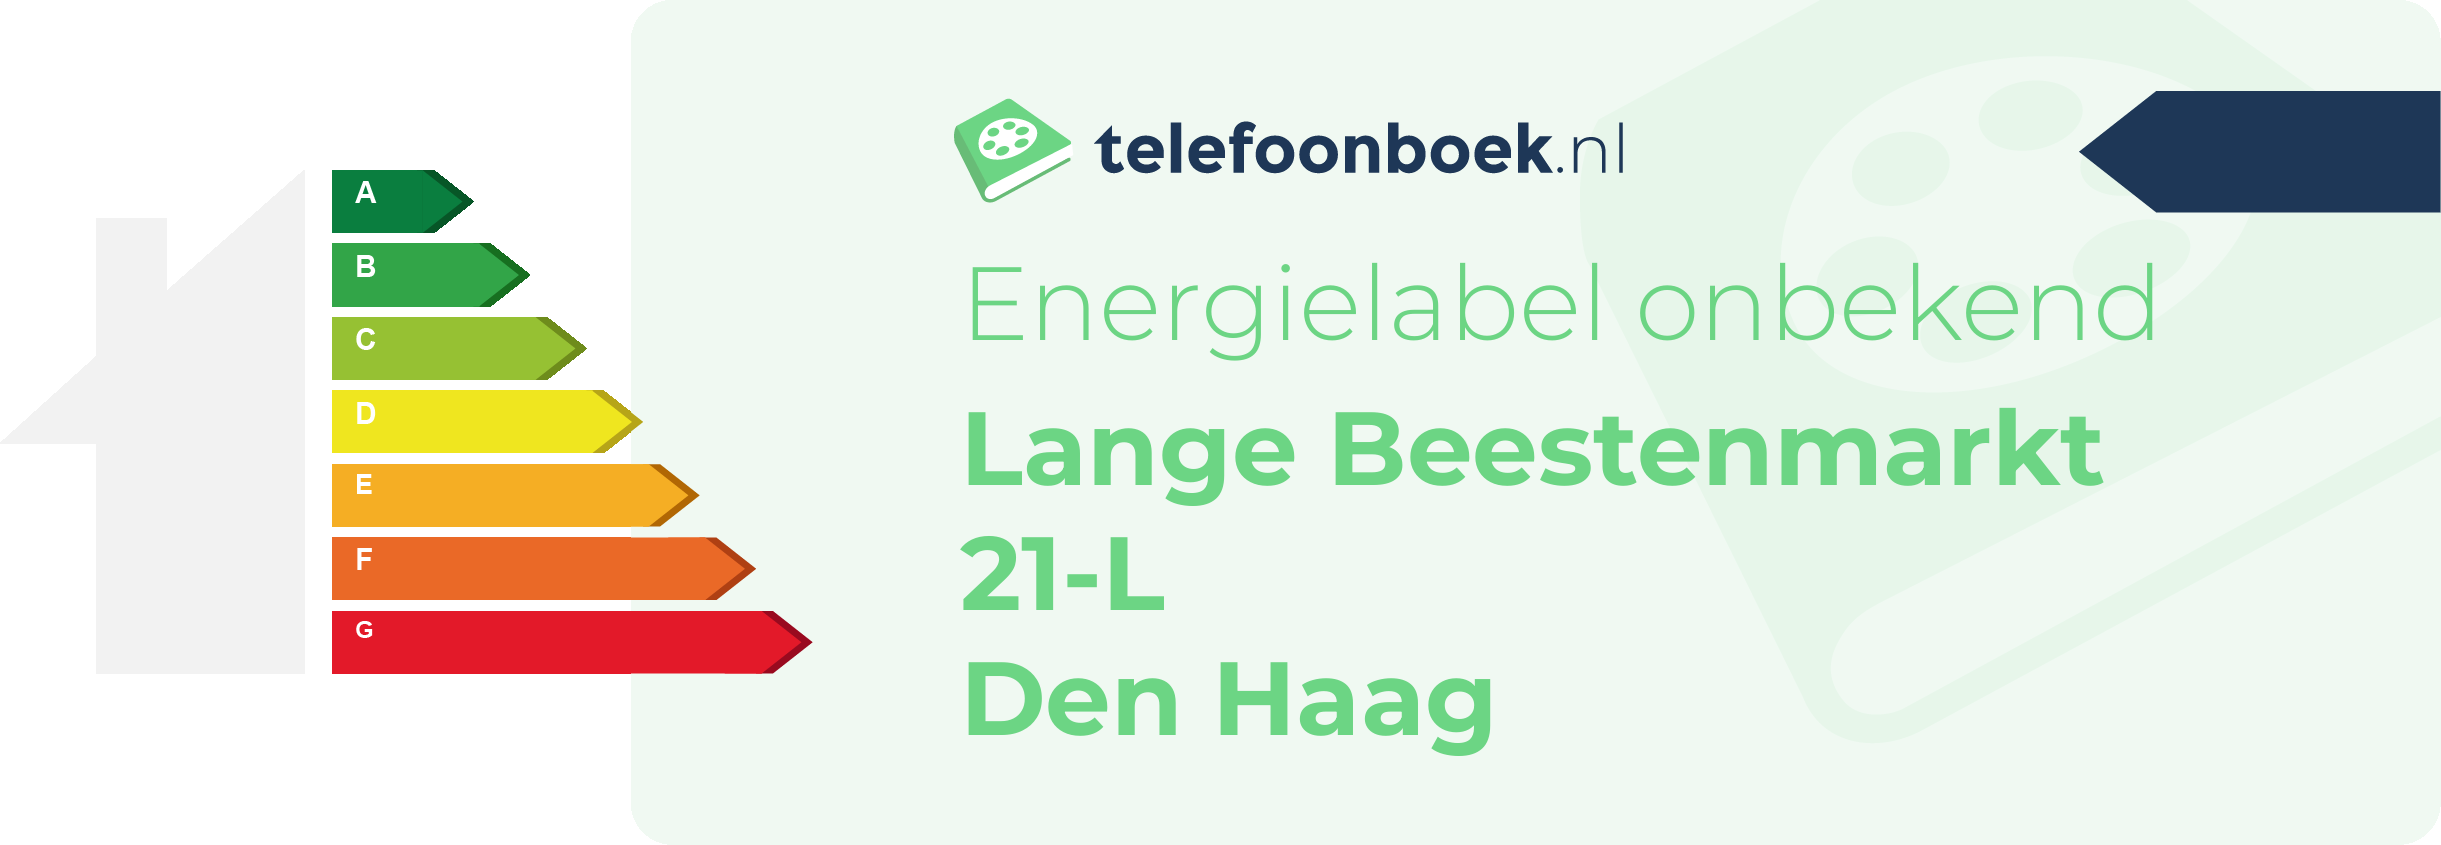 Energielabel Lange Beestenmarkt 21-L Den Haag